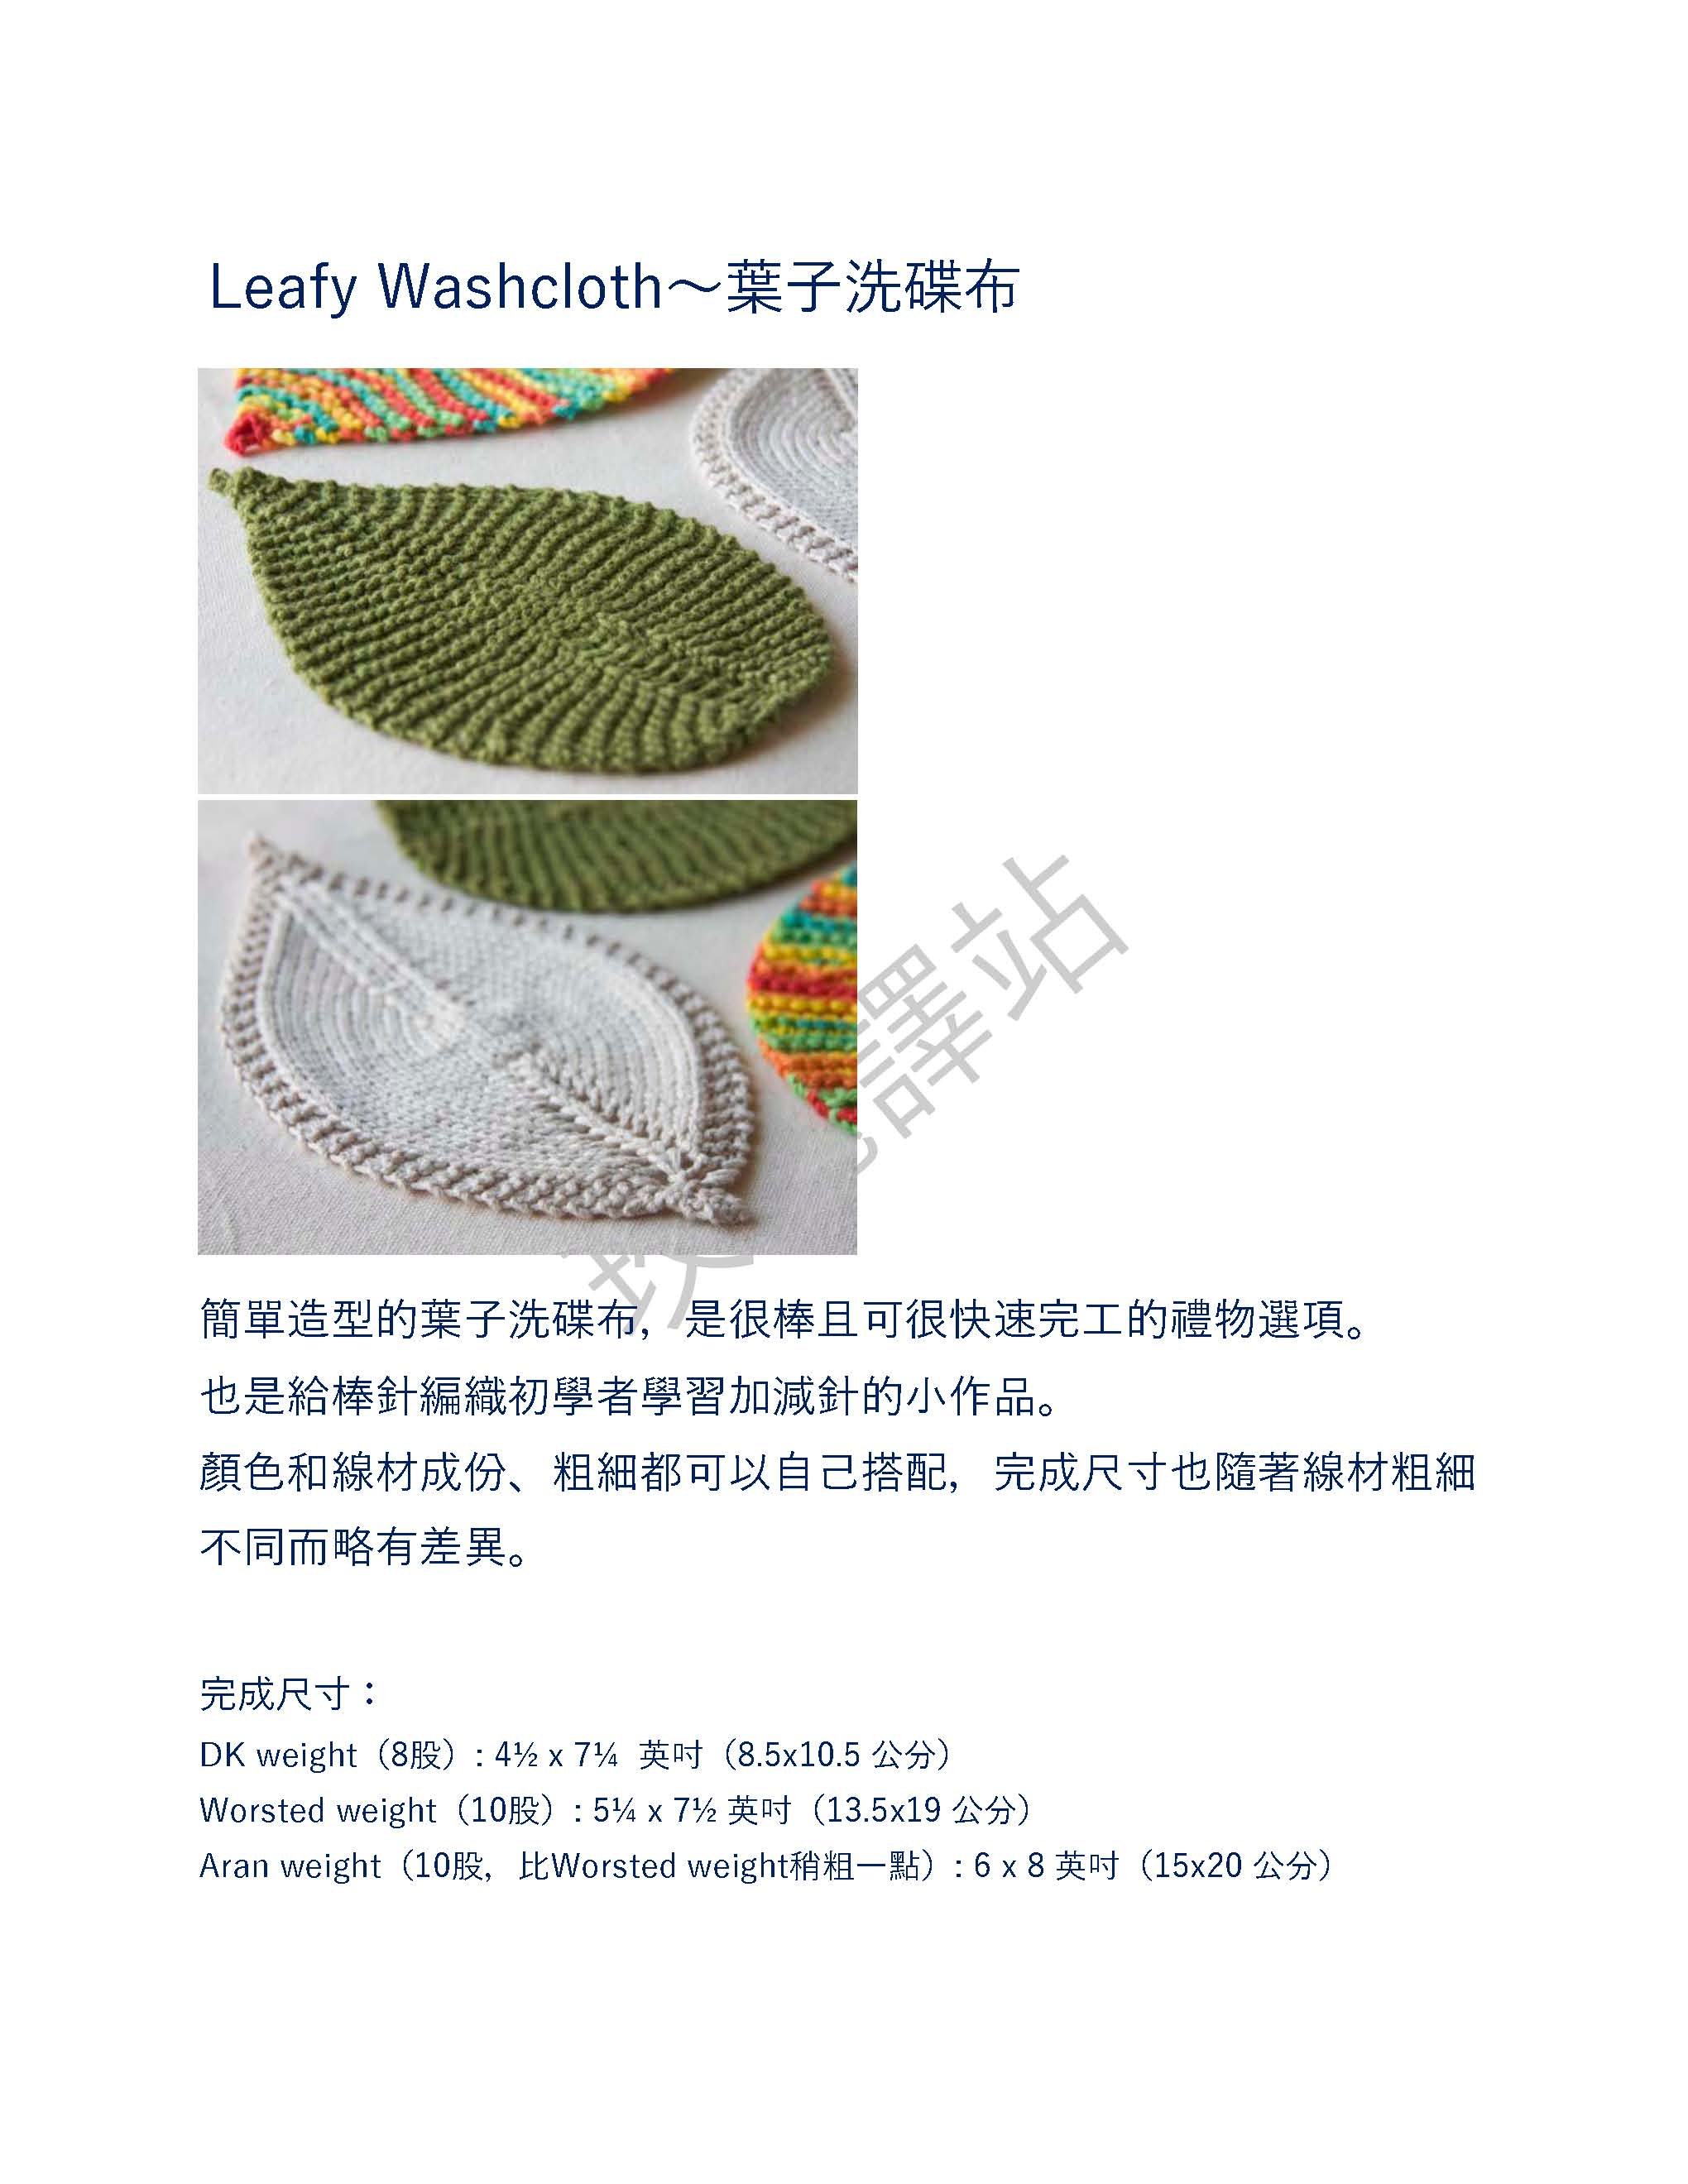 Leafy Washcloth__1.jpg